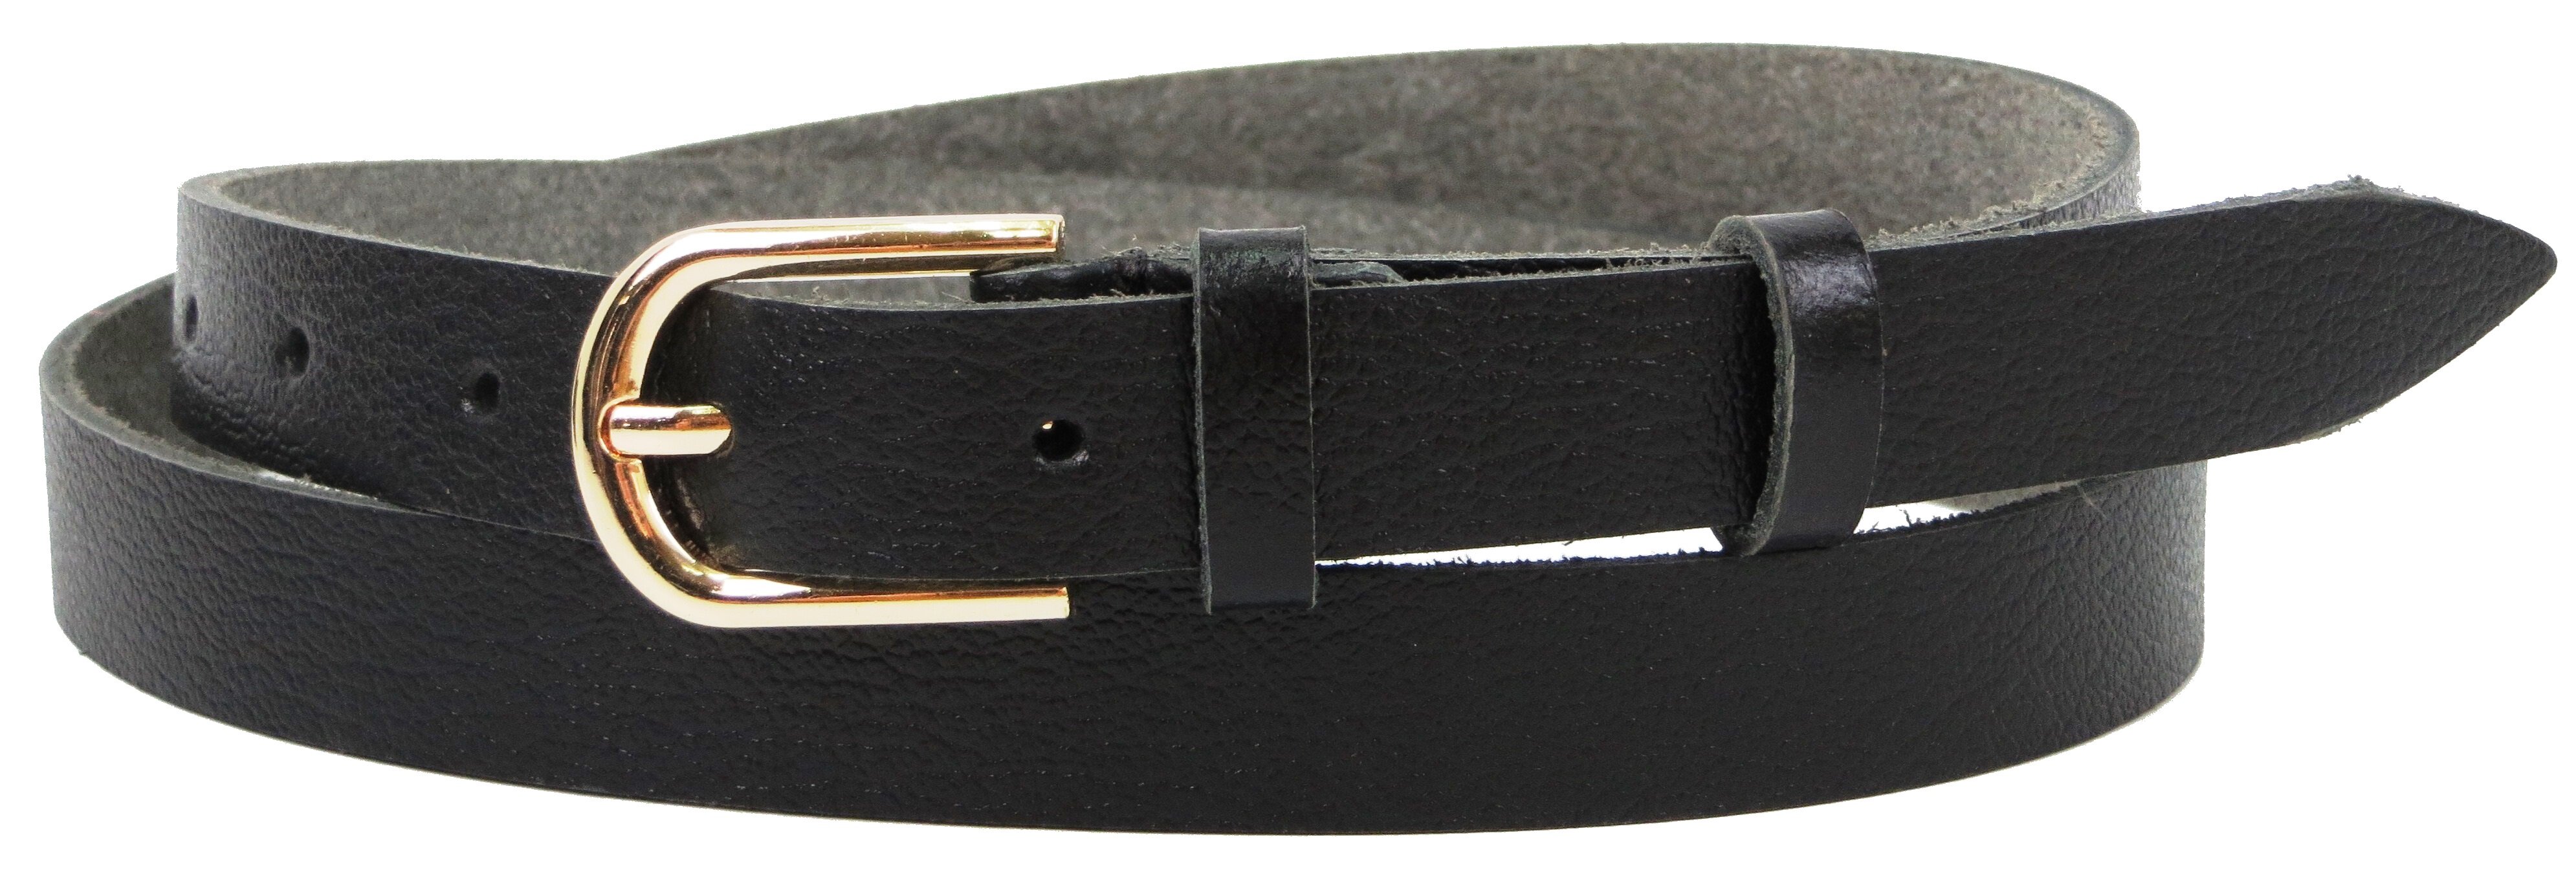 Ремень женский кожаный Skipper 2 см Черный (1365-20)